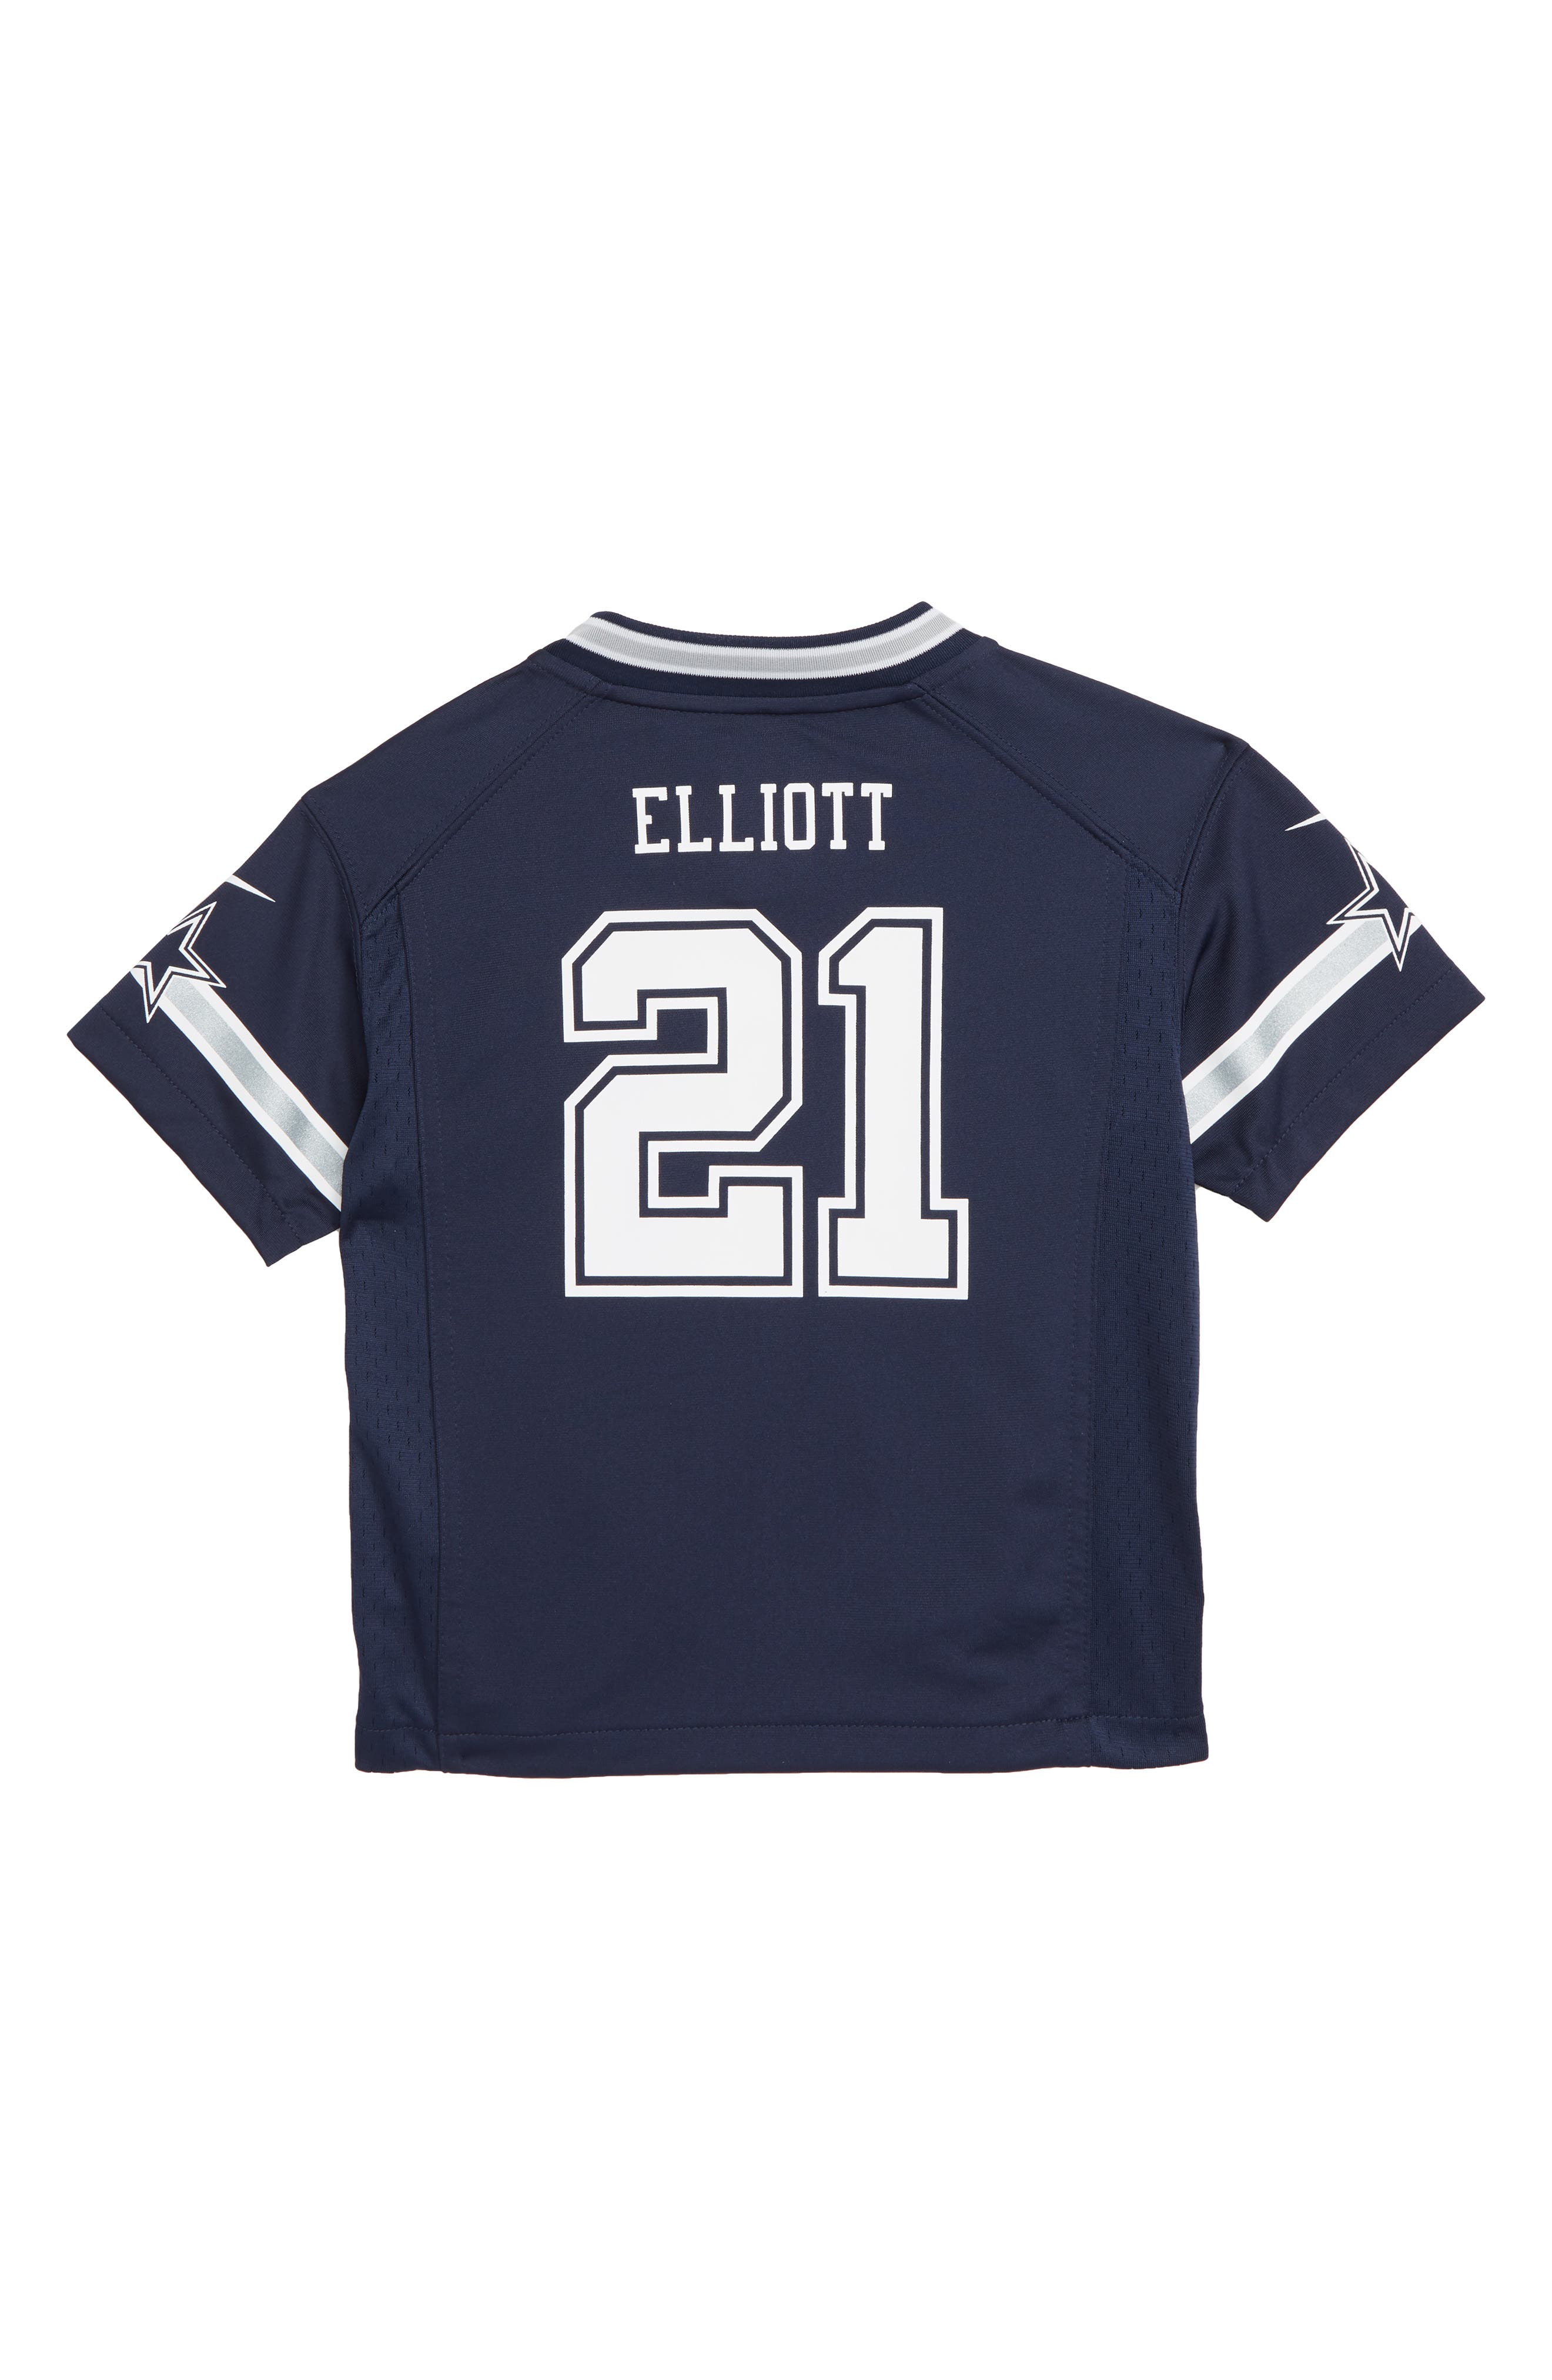 Nike NFL Dallas Cowboys Ezekiel Elliott 